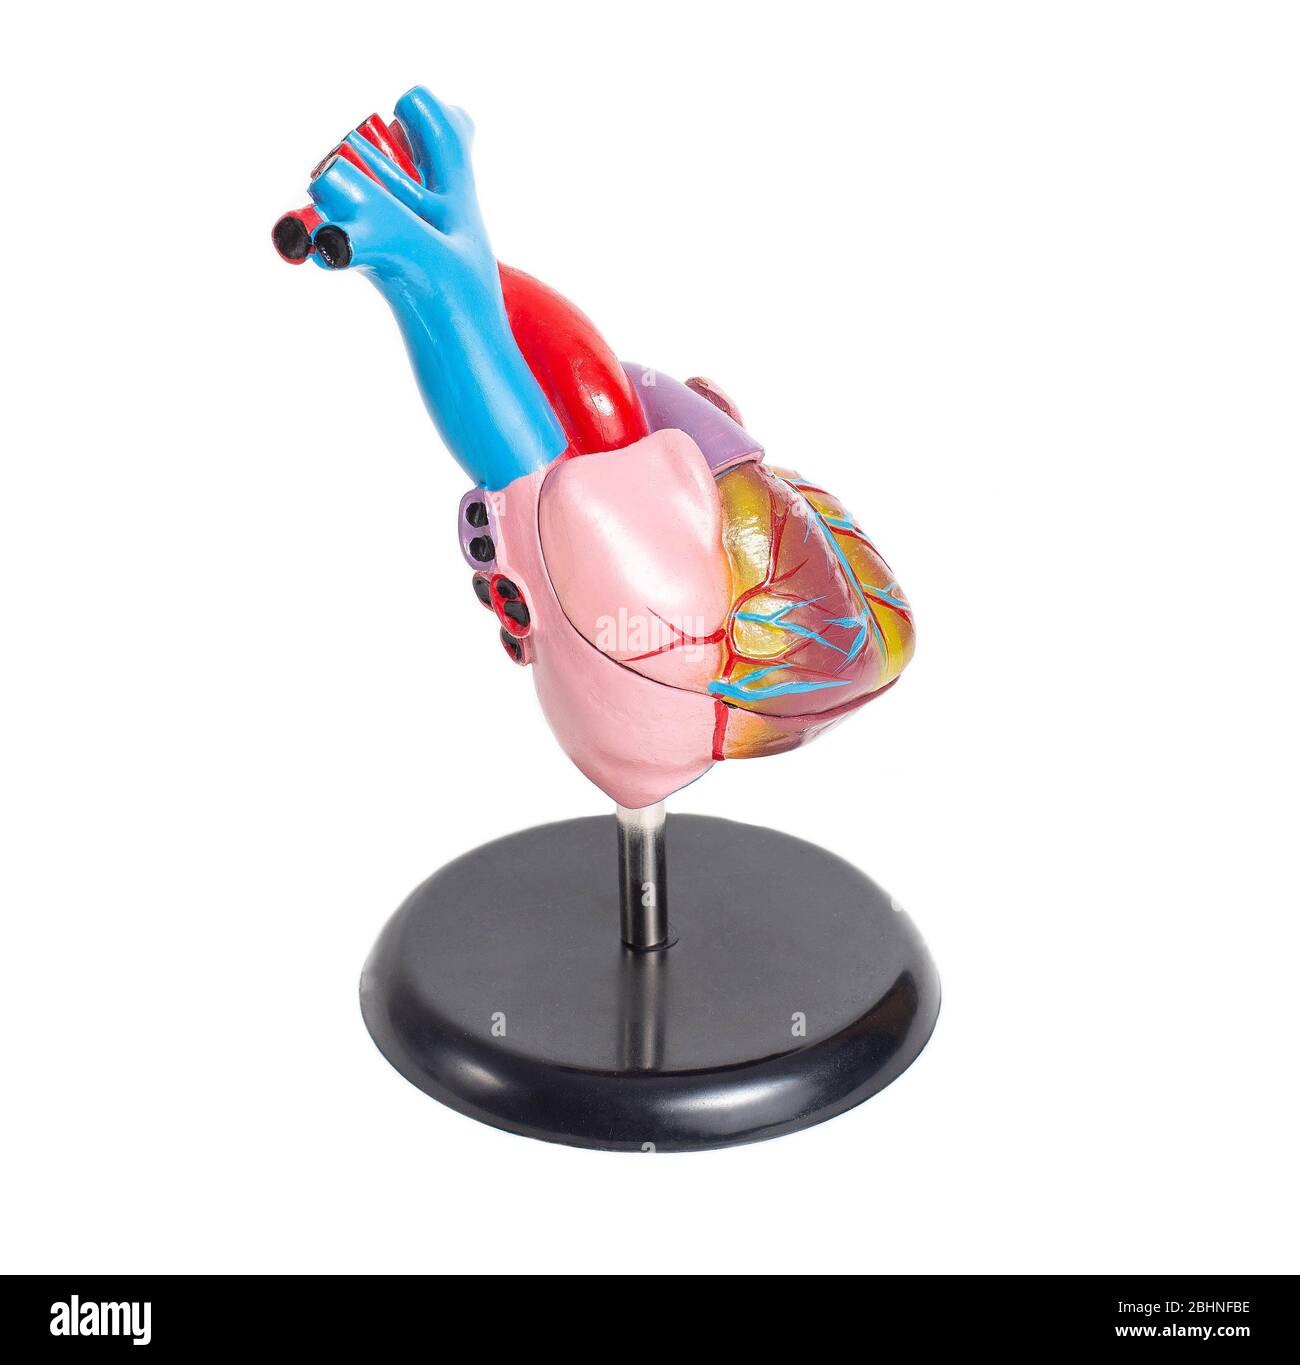 Maquette d'un coeur d'organe humain sur un fond blanc, isoler. Structure anatomique et physiologie du coeur, du ventricule droit et gauche et de l'oreillette. Banque D'Images